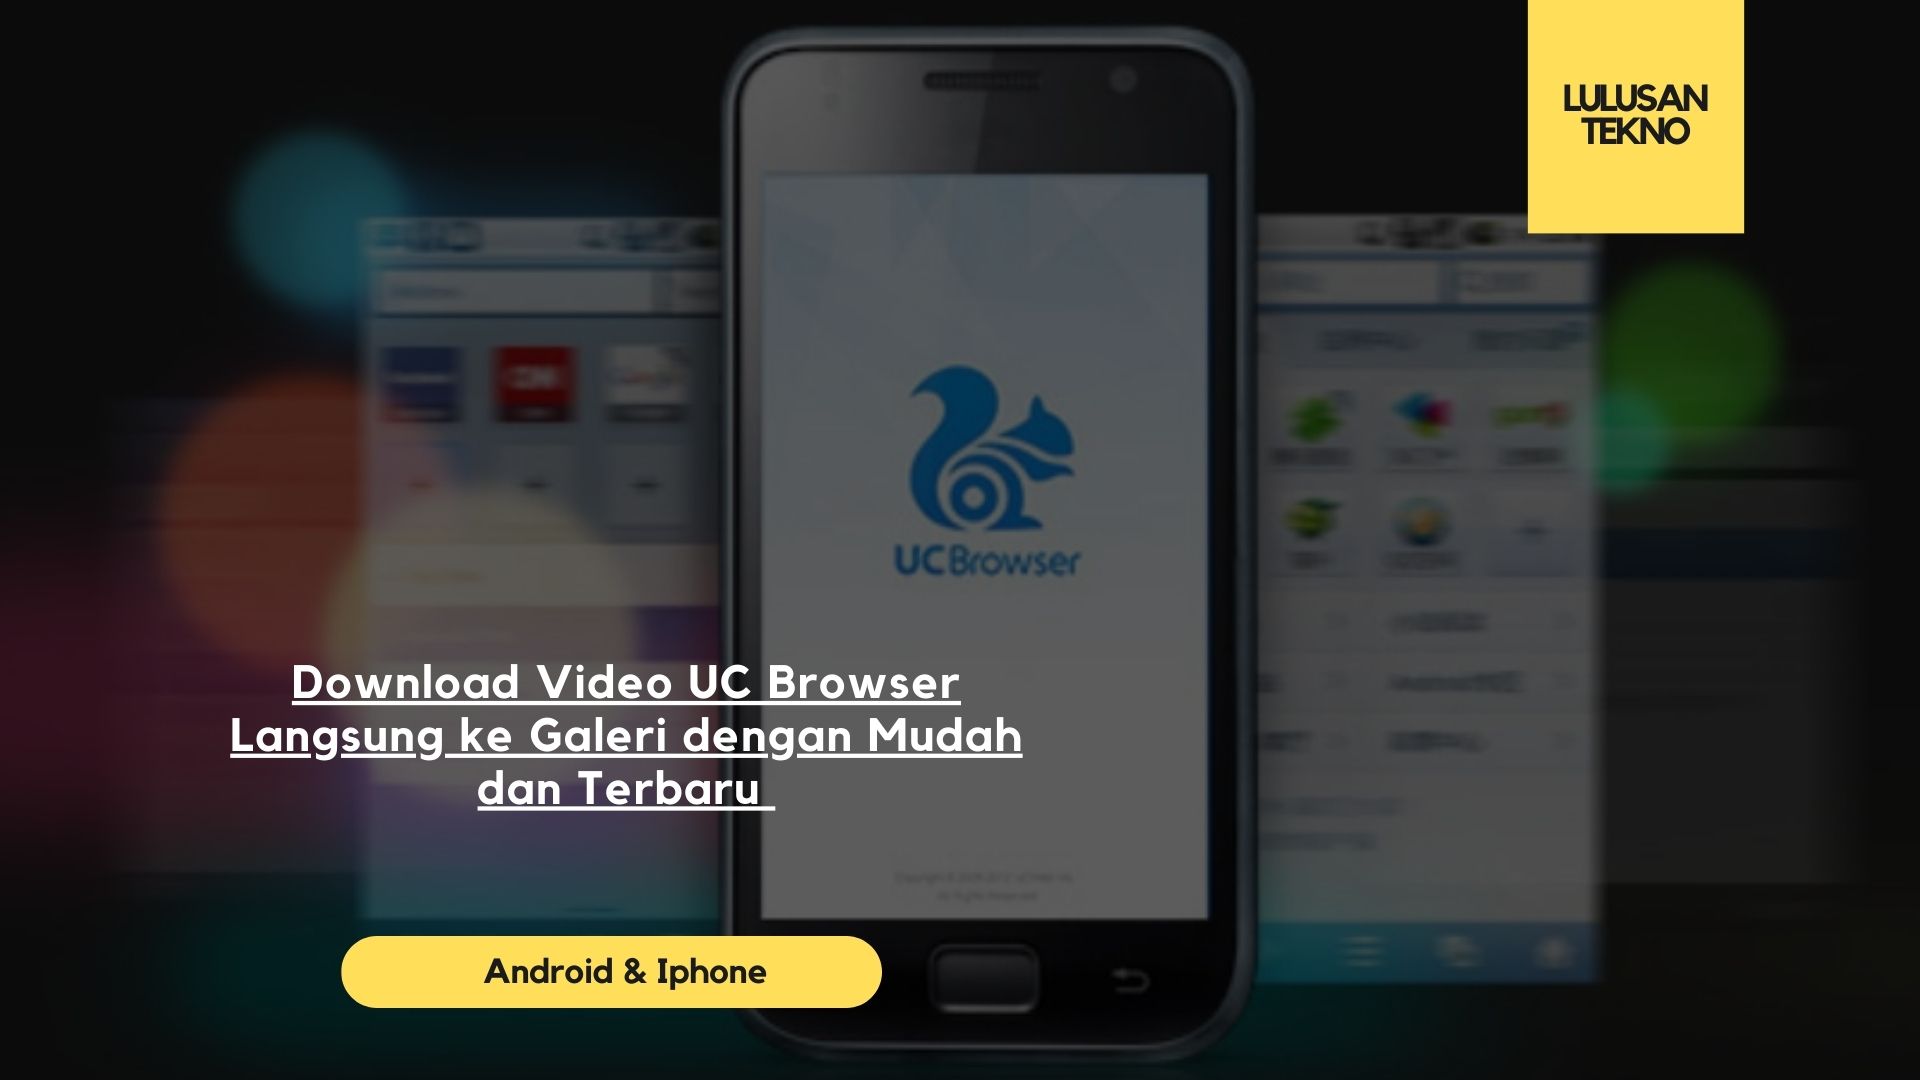 Download Video UC Browser Langsung ke Galeri dengan Mudah dan Terbaru